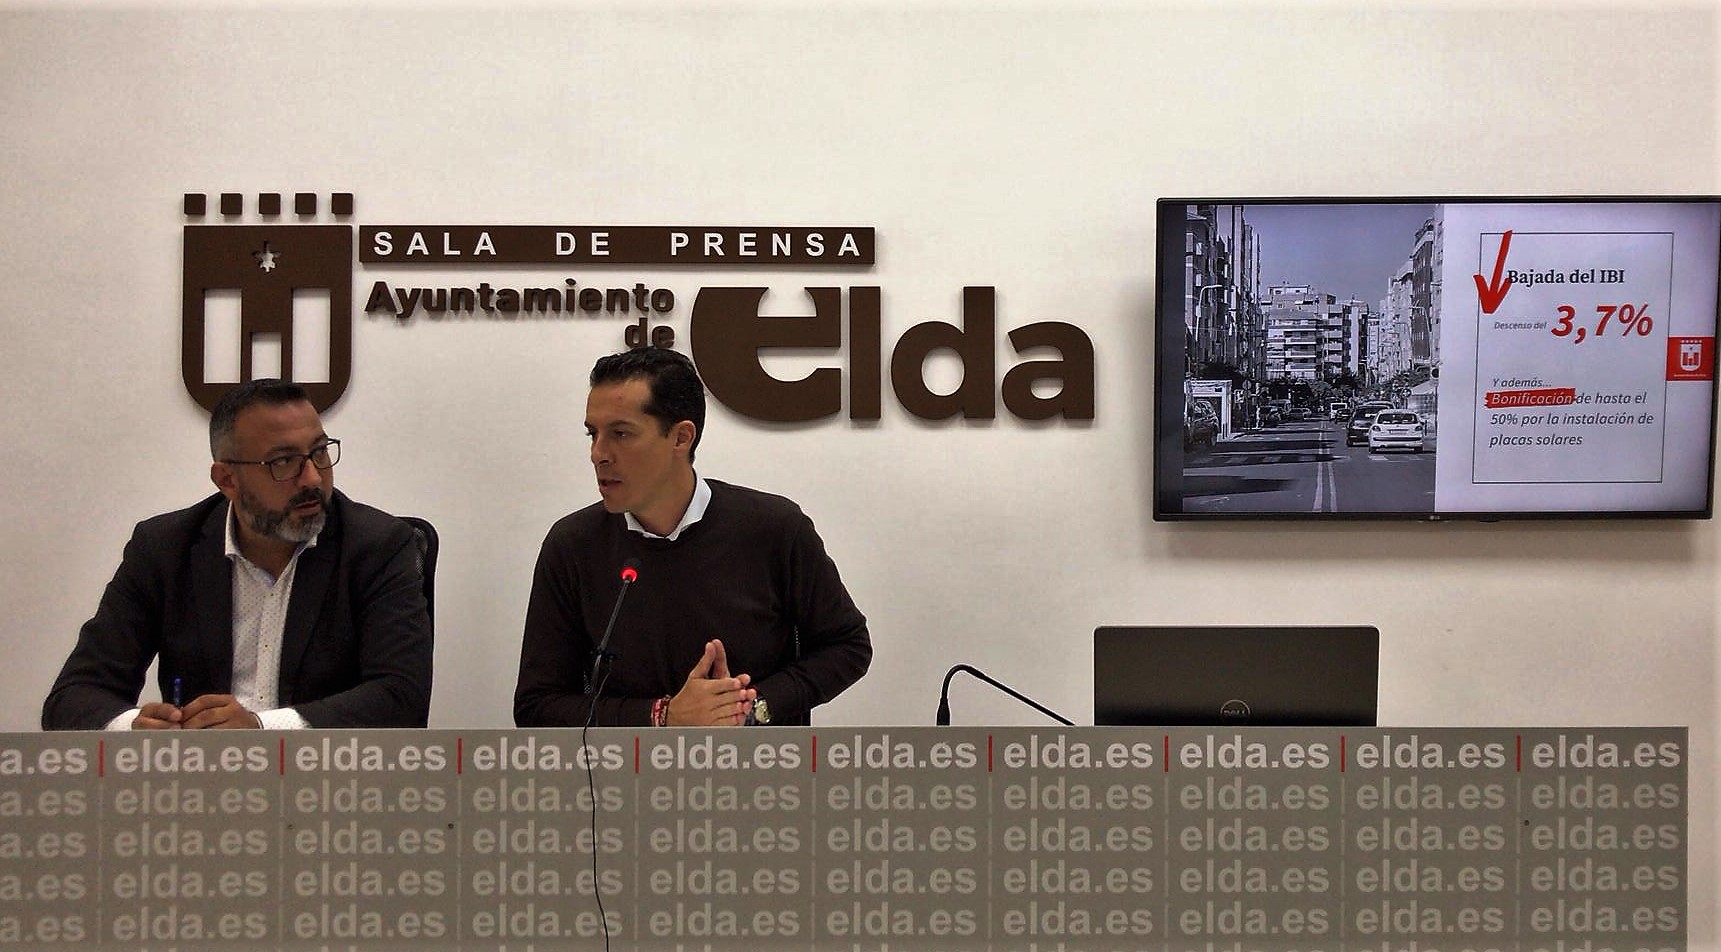 El Ayuntamiento de Elda rebaja un 3,7% el tipo impositivo del IBI y bonificará la instalación de placas solares